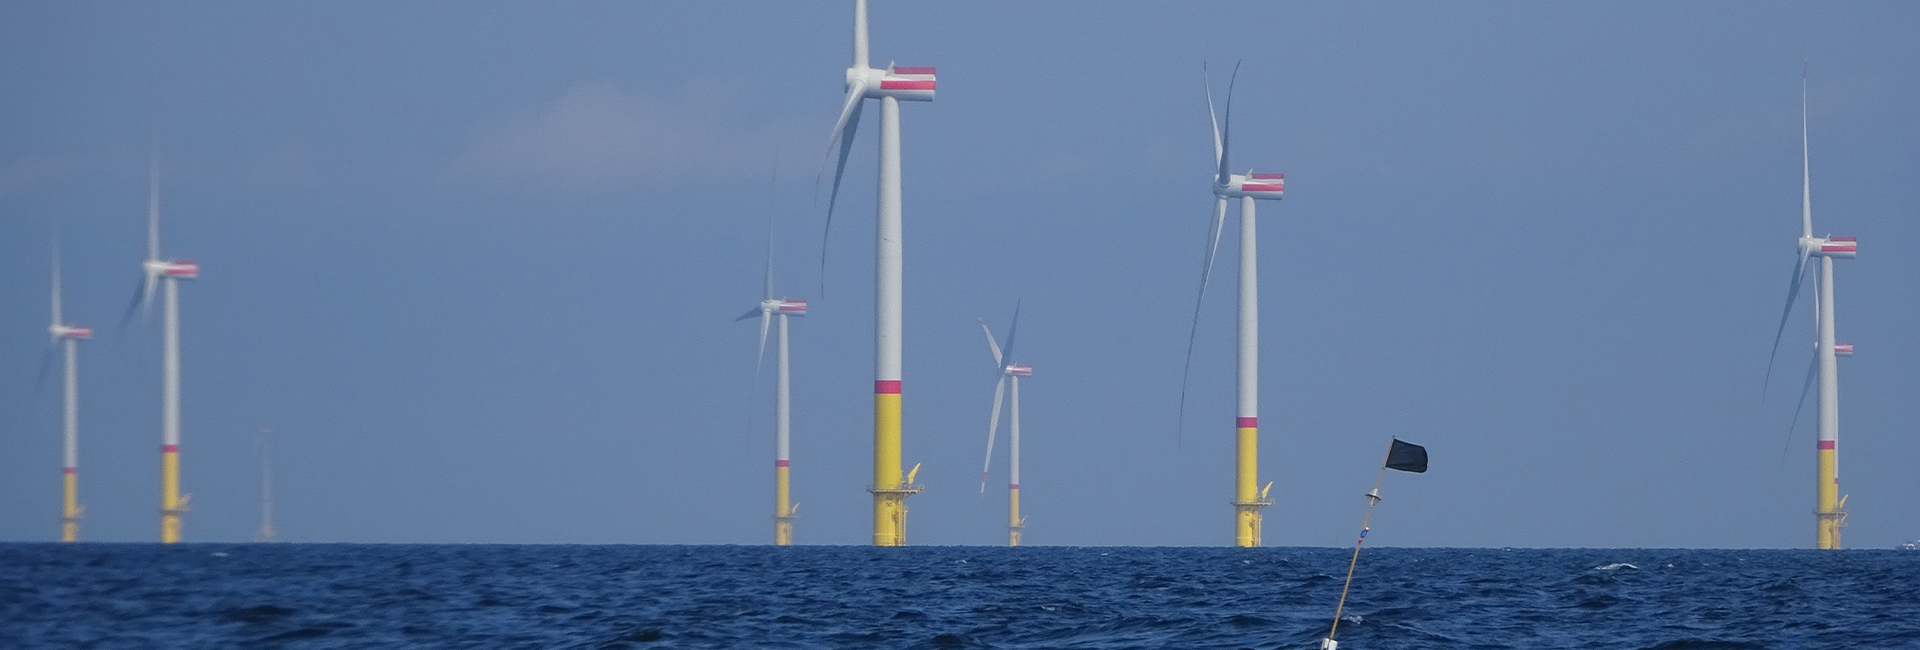 Windräder auf der Ostsee. Bild: Hereon/ Marcus Reckermann